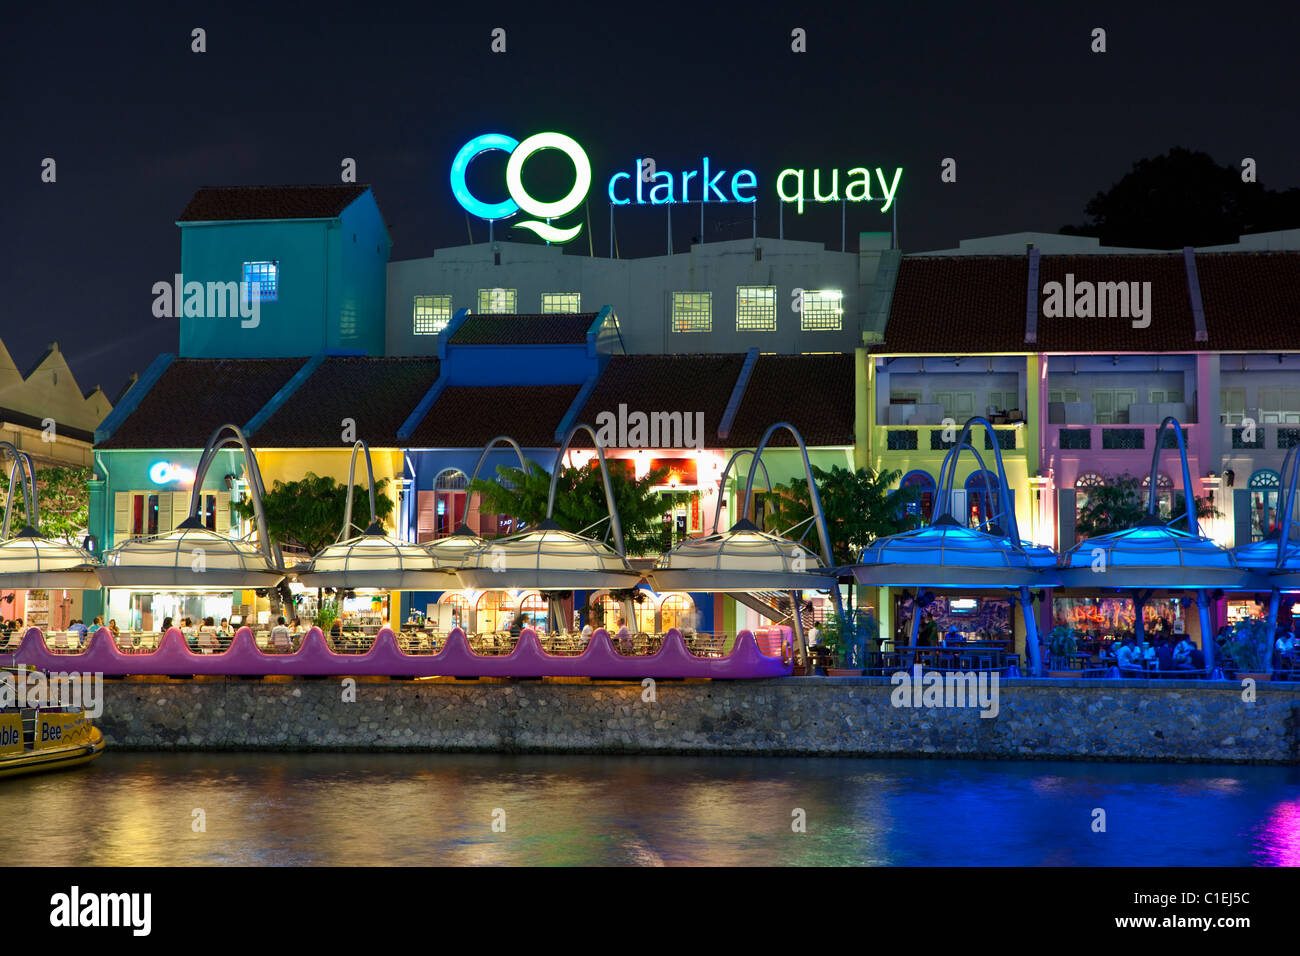 Riverside restaurants à l'entertainment district de Clarke Quay, Singapour Banque D'Images